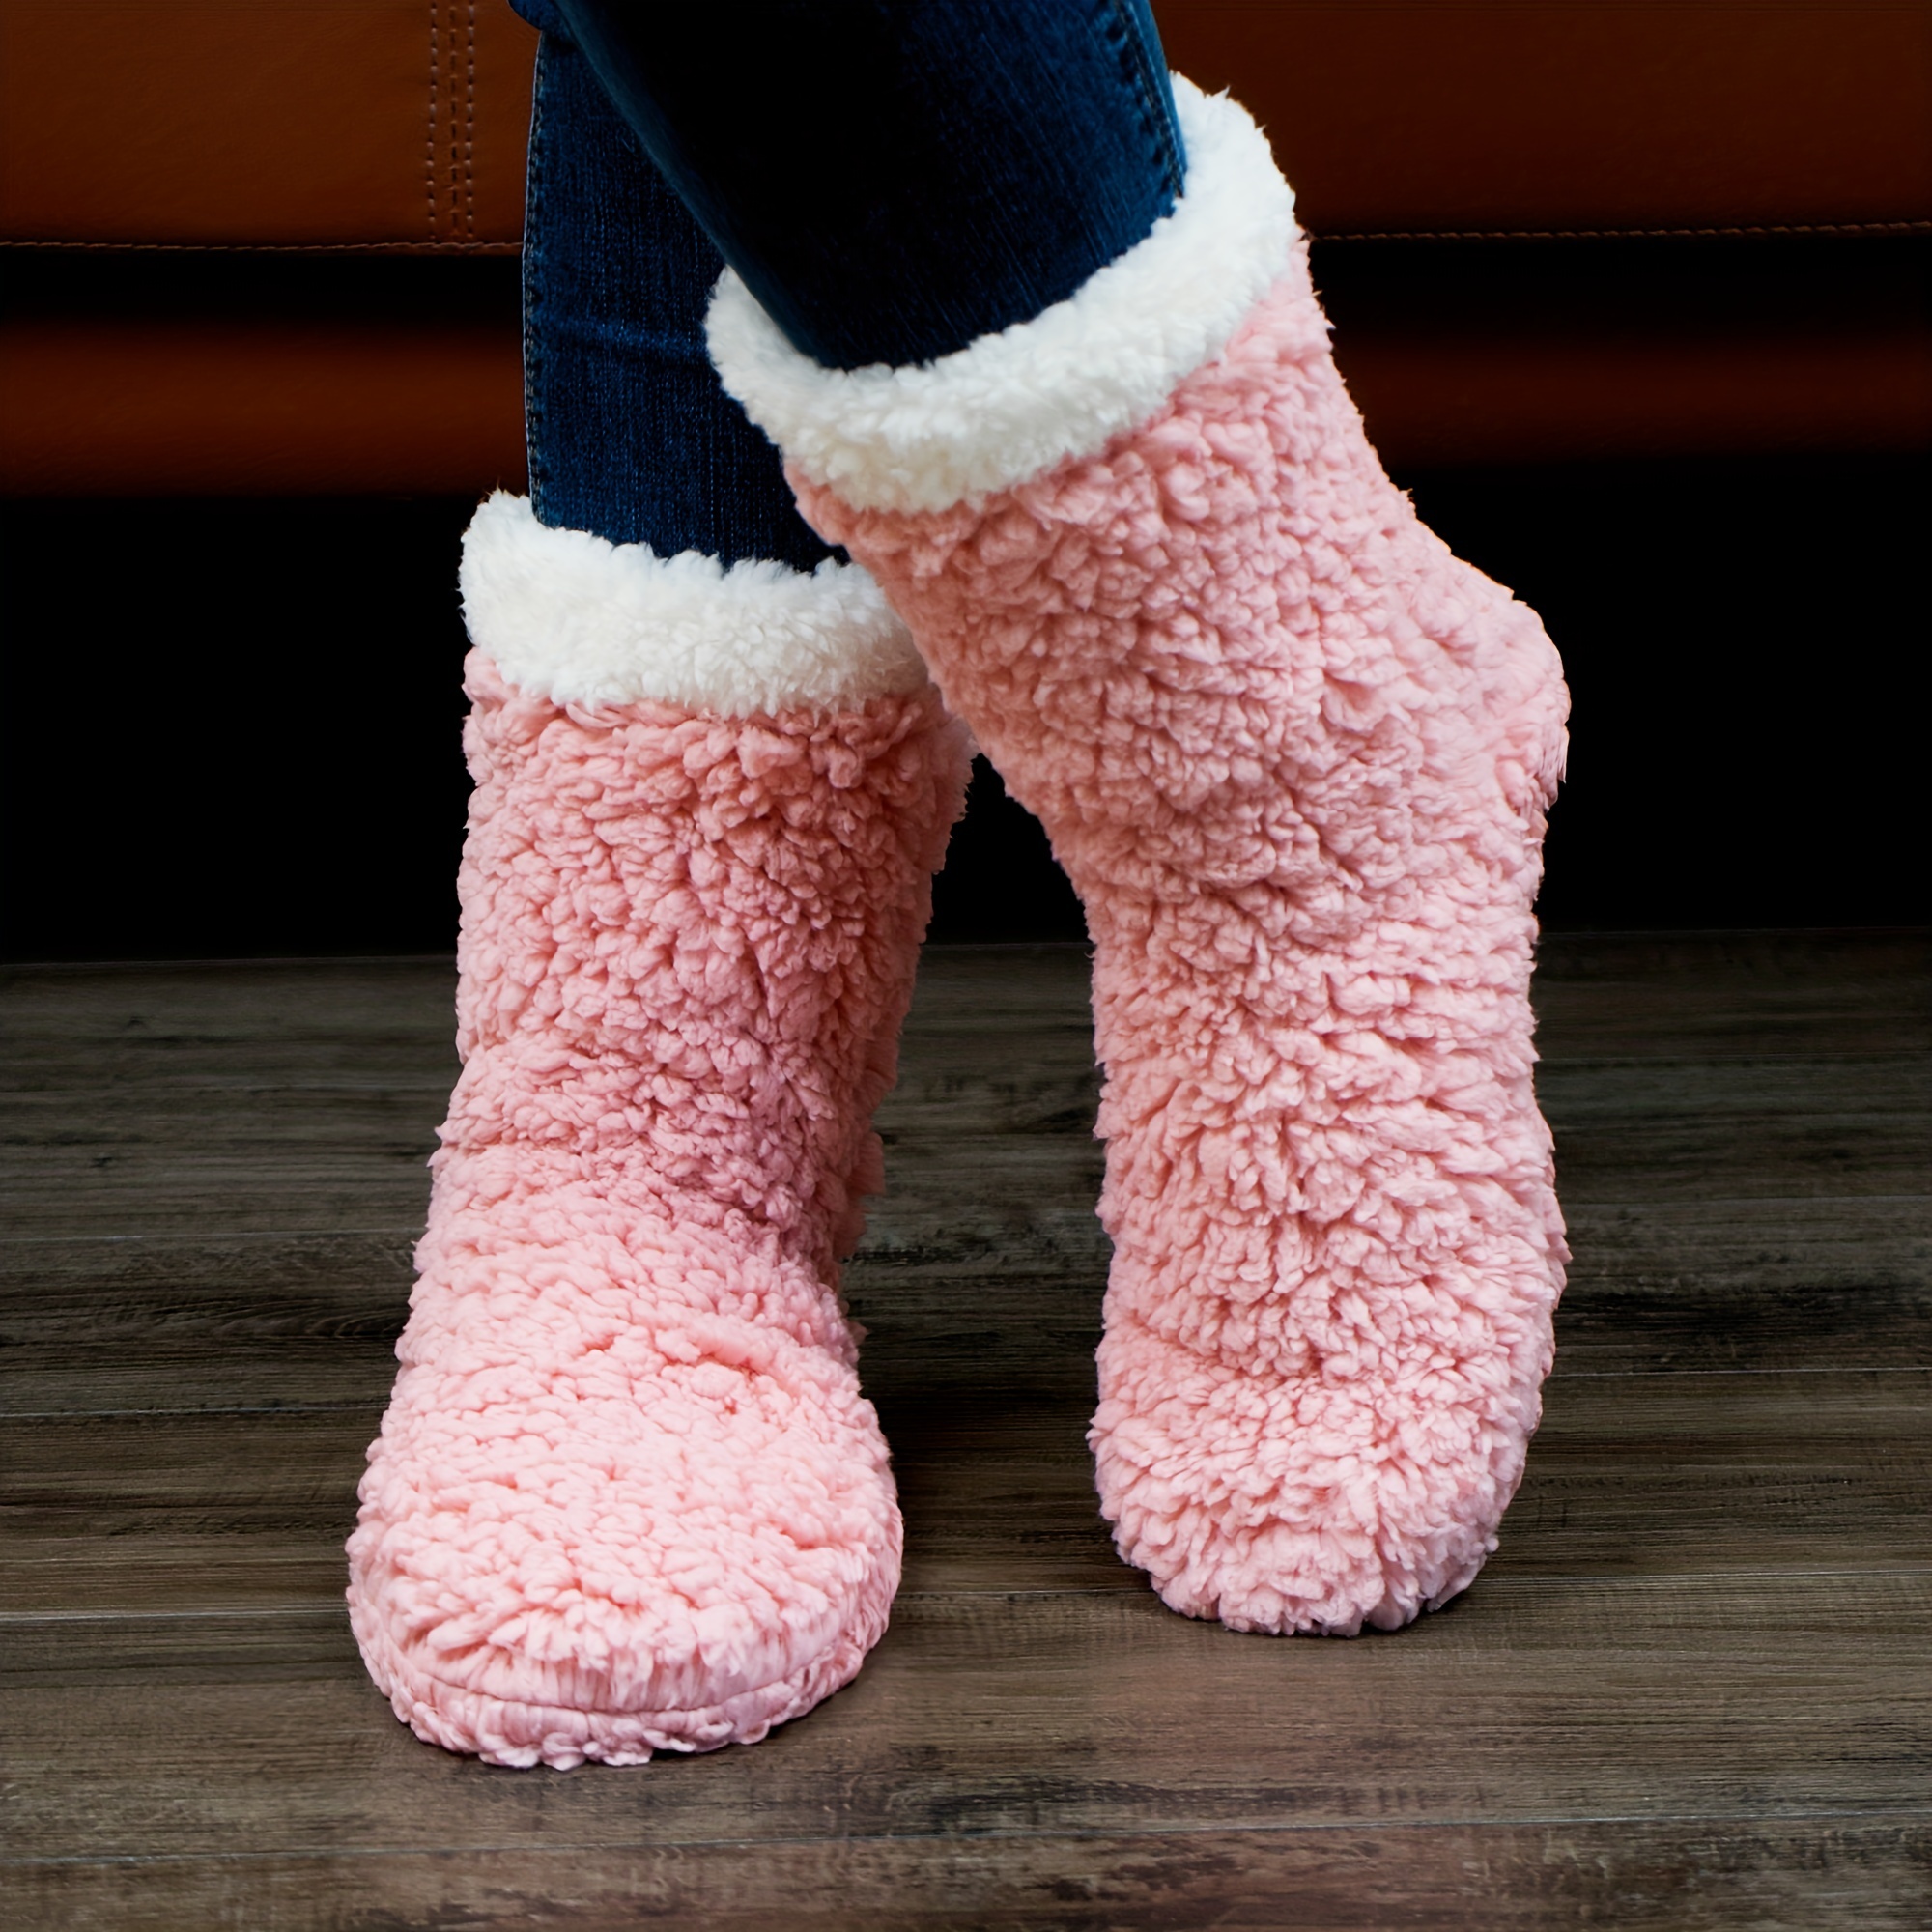 Para el frío ¿calcetines de lana o calcetines térmicos? - Big In